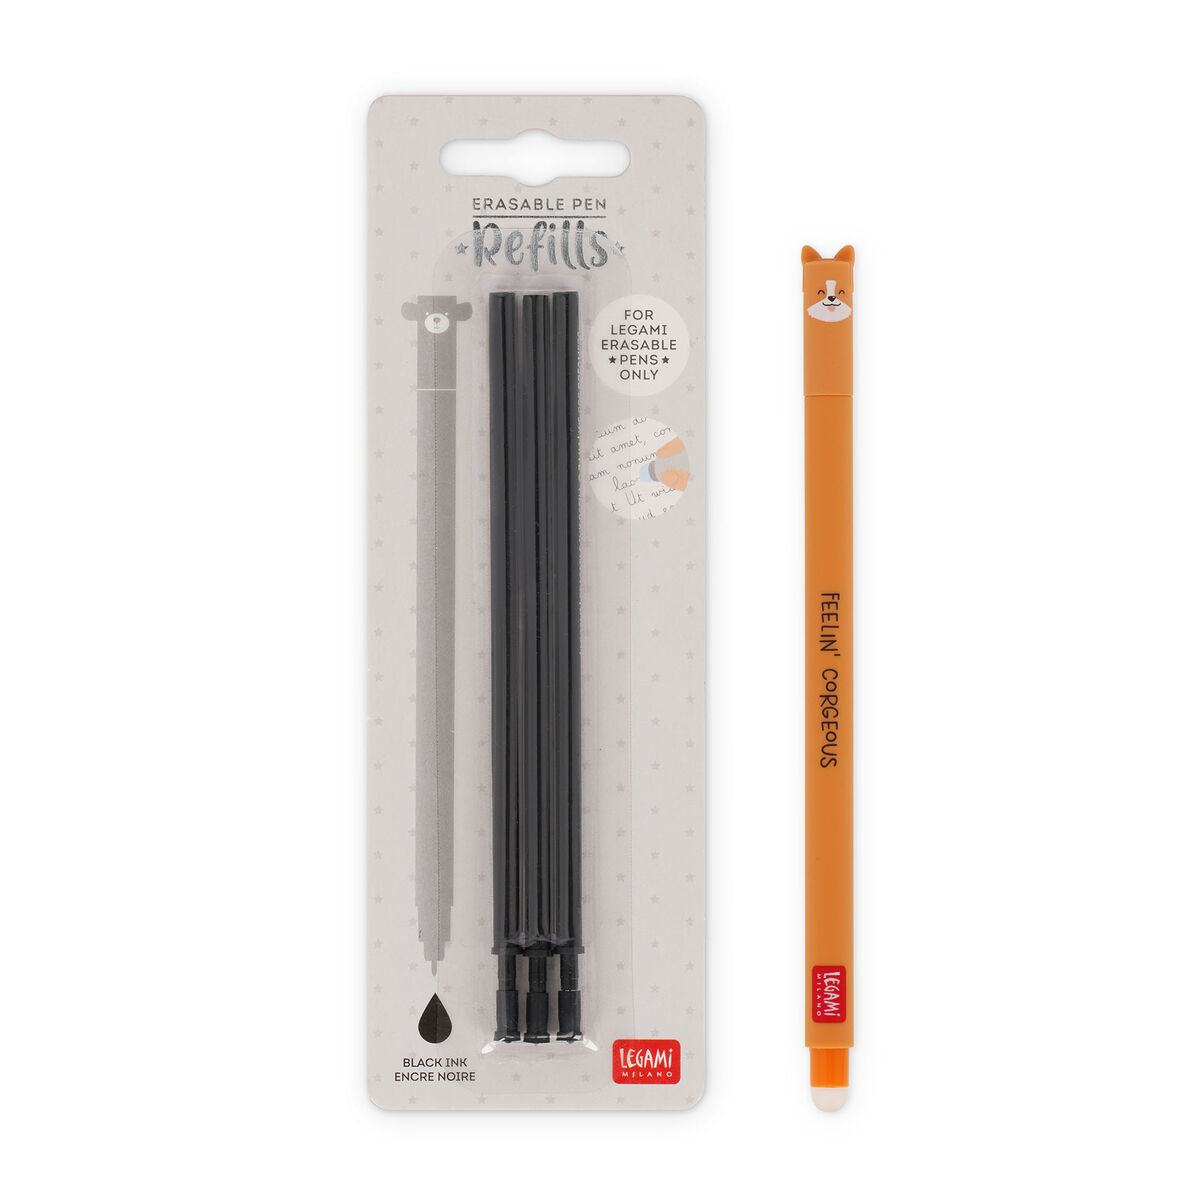 Corgi Erasable Pen Set with Black Refill, , zoo